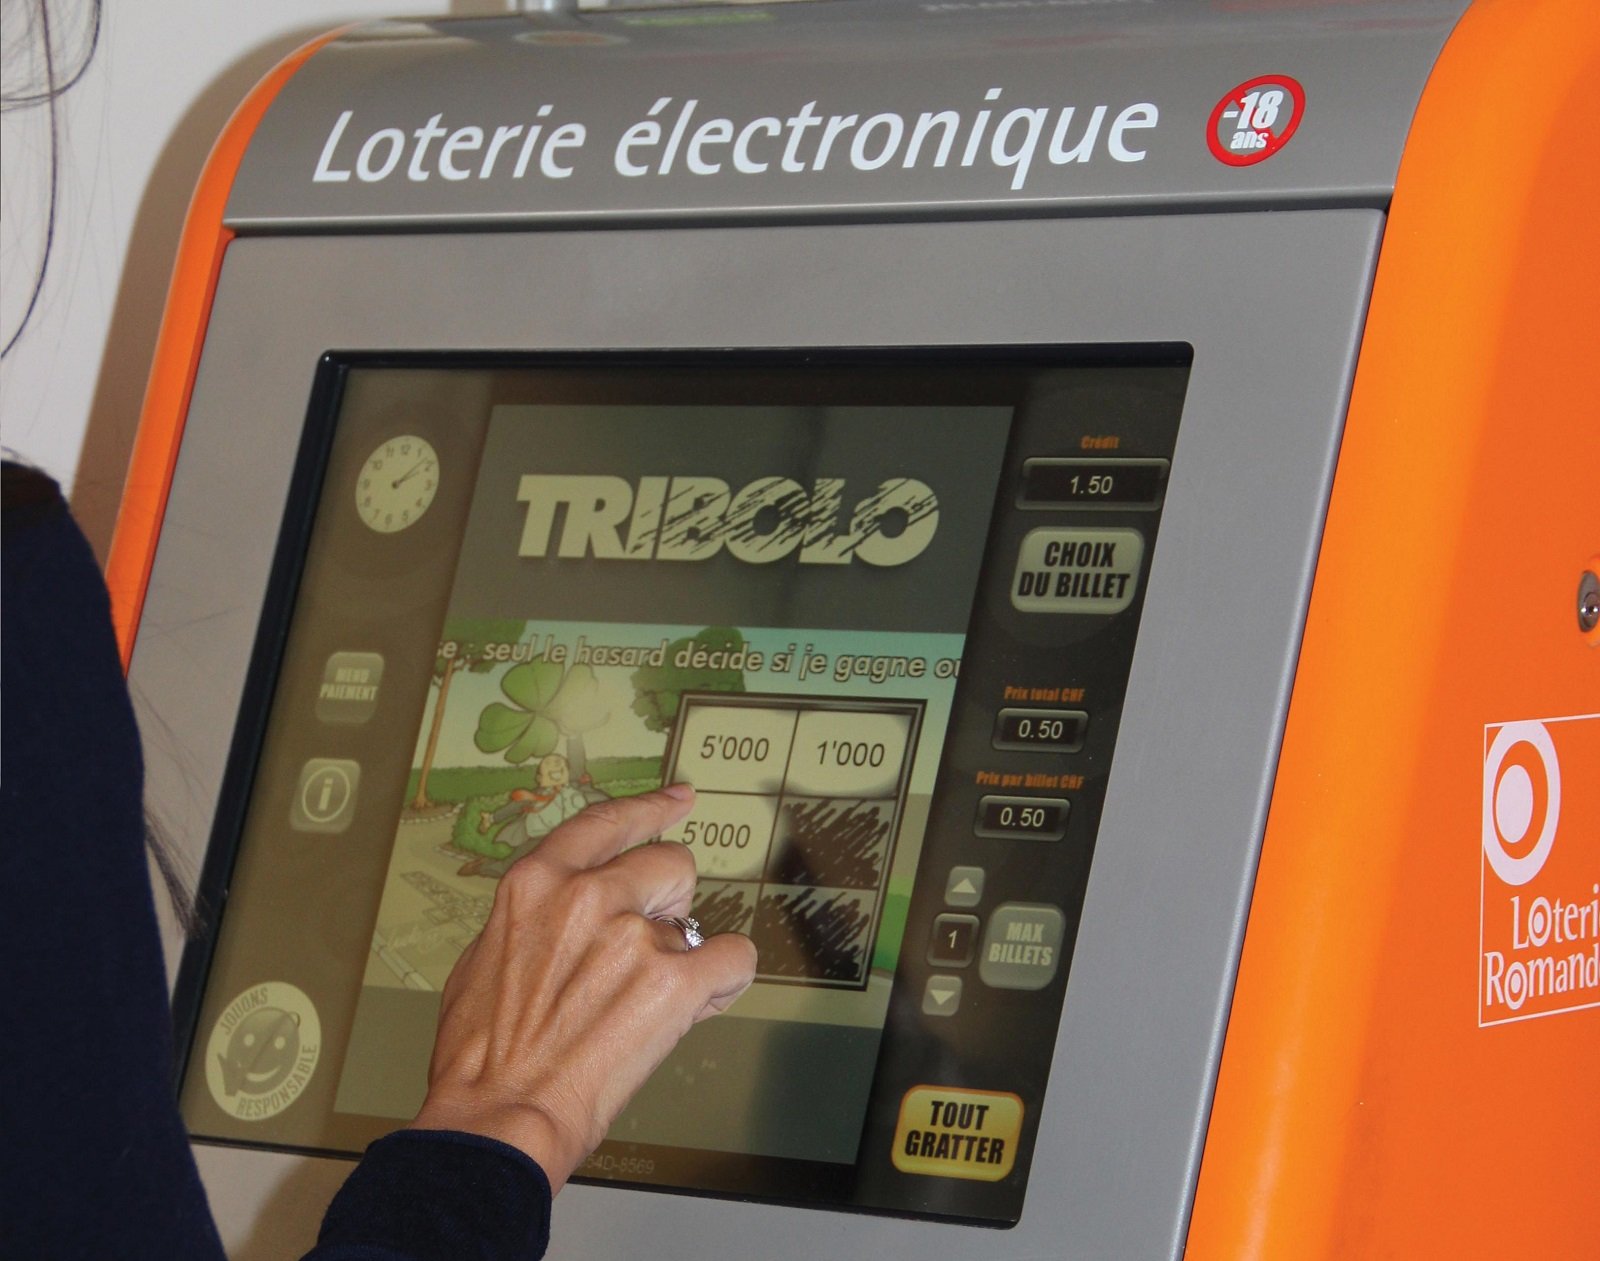 Loterie électronique Loterie Romande VLT Lotto-Terminal Bildschirm Hand